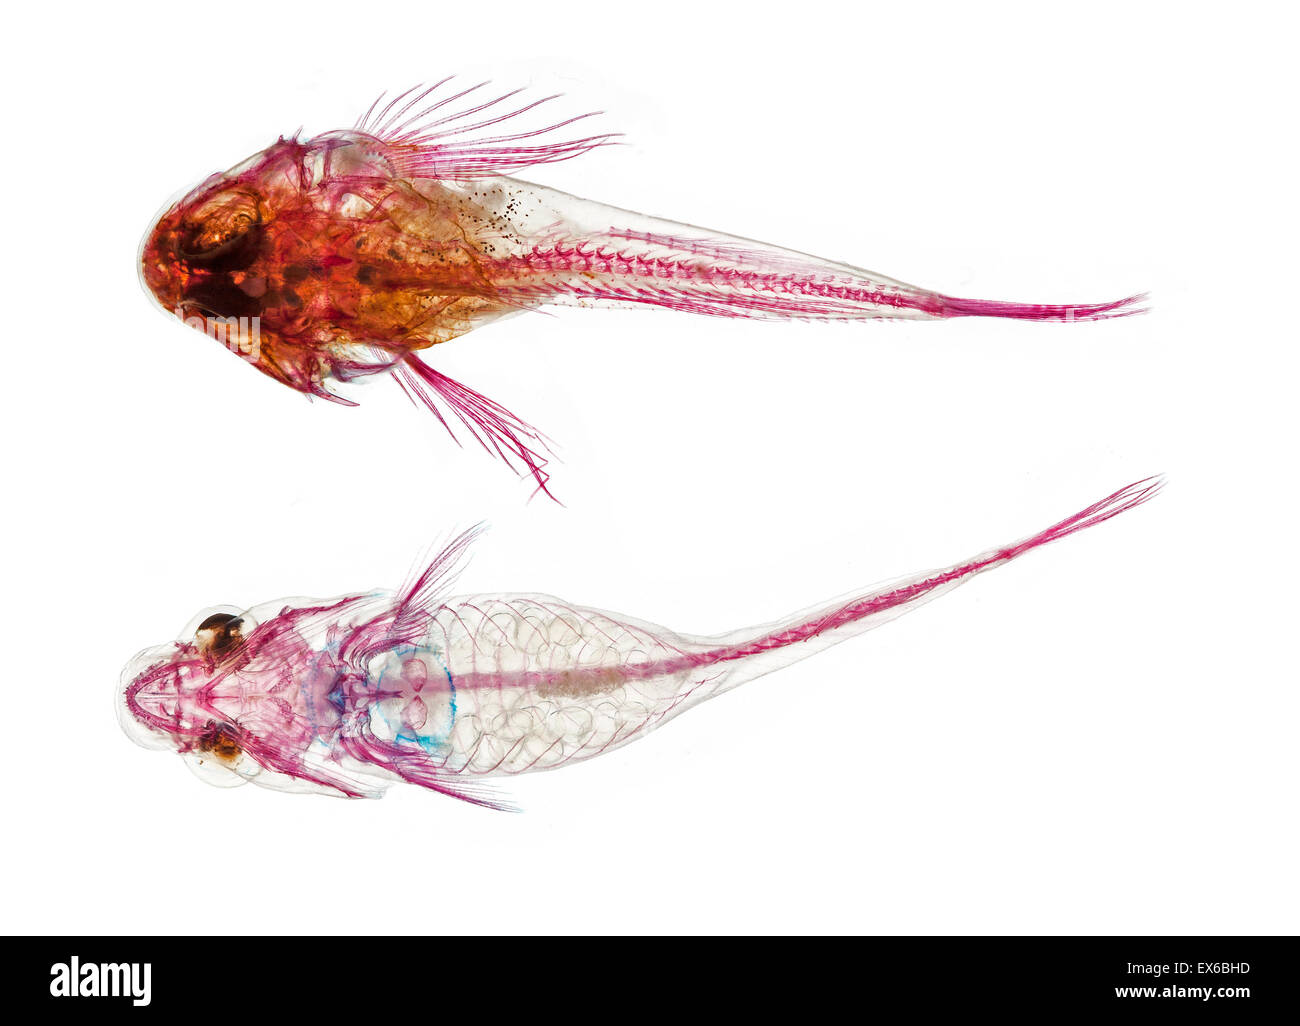 Partie supérieure : Juvenile Taurulus bubalis, le scorpion de mer, descente : Diplecogaster bimaculata, le clingfish Banque D'Images